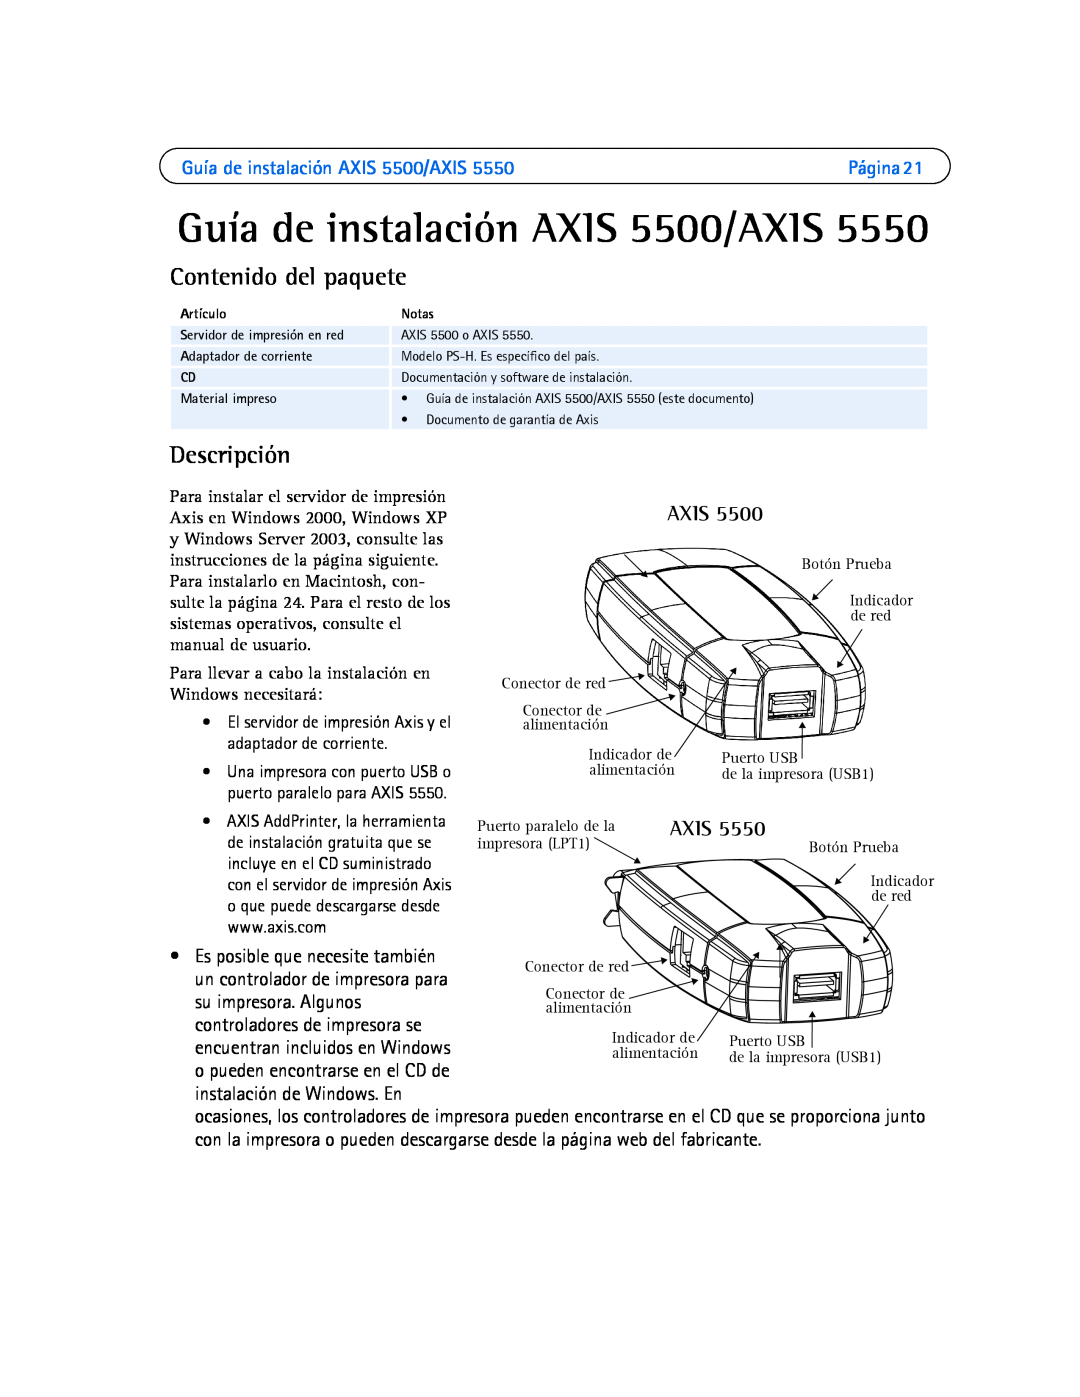 Axis Communications AXIS 5550 manual Guía de instalación AXIS 5500/AXIS, Contenido del paquete, Descripción, Axis 